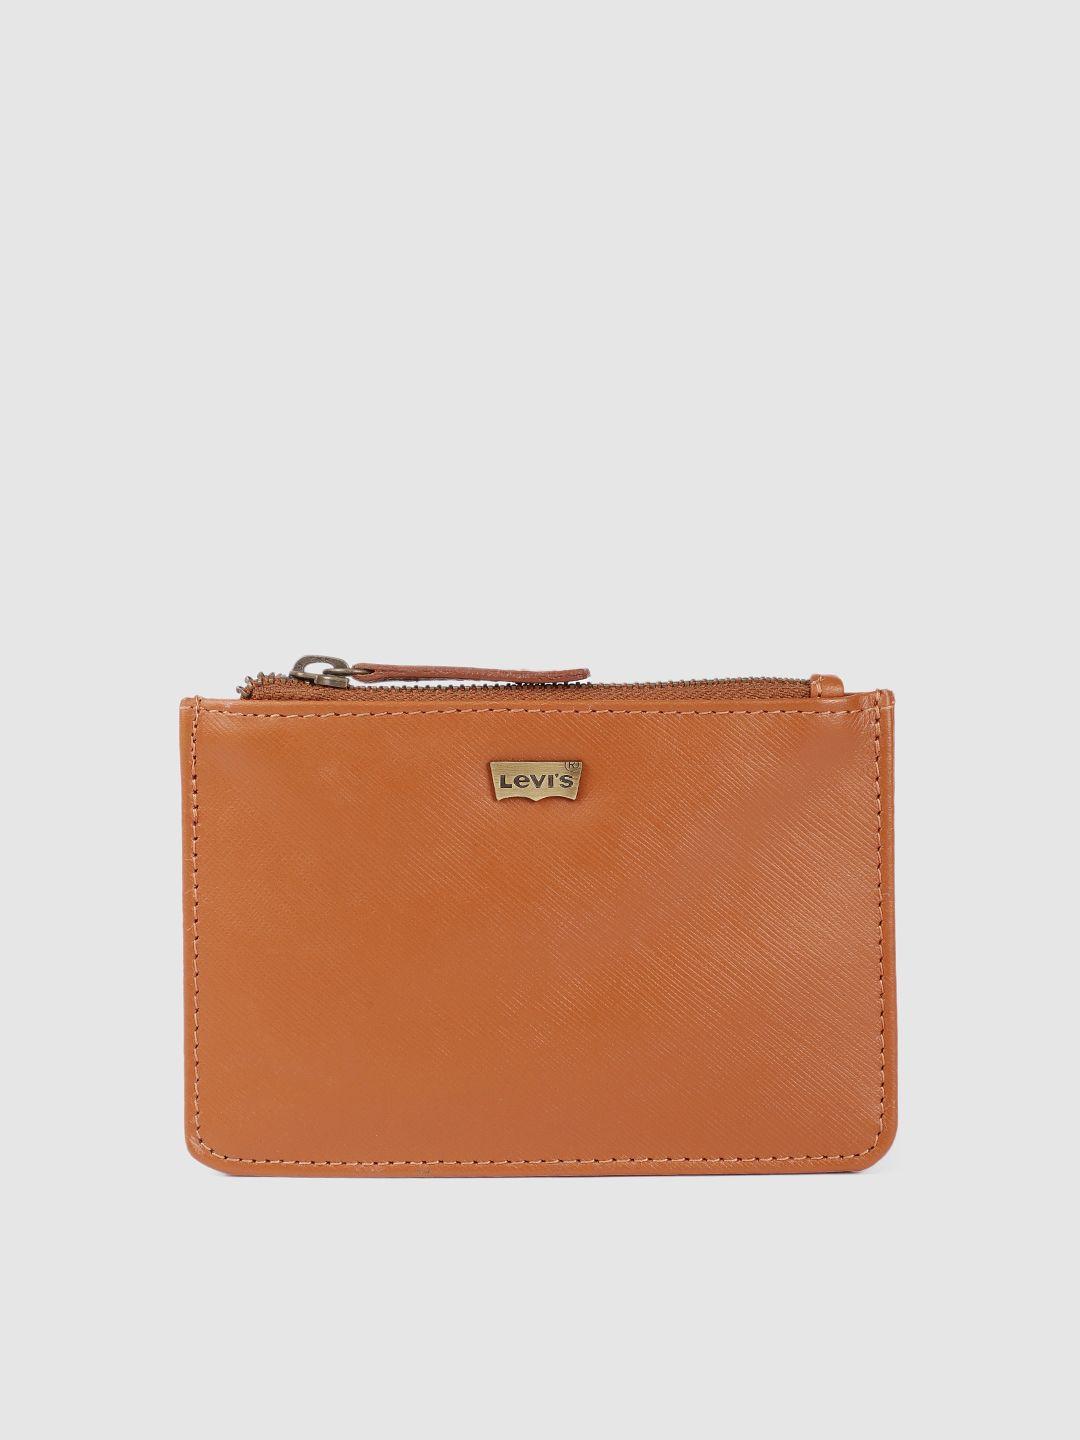 levis men brown leather zip around wallet